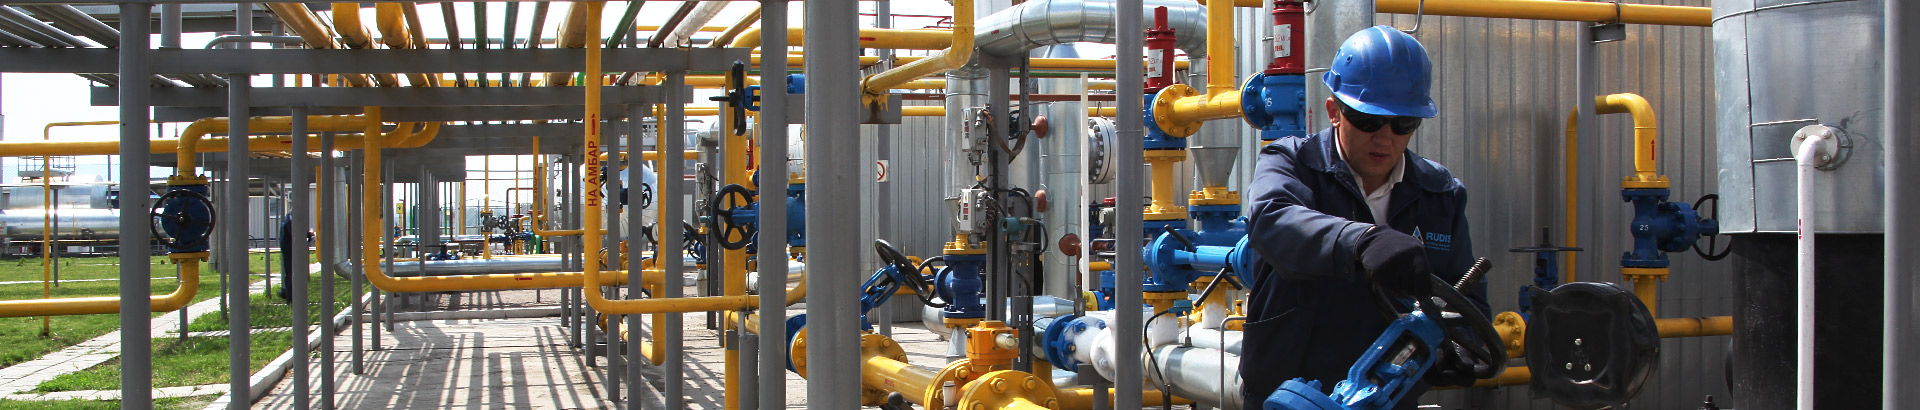 (Українська) Компанія Arab Energy Alliance UA пишається тим, що є нафтогазовою компанією з великими знаннями в галузі